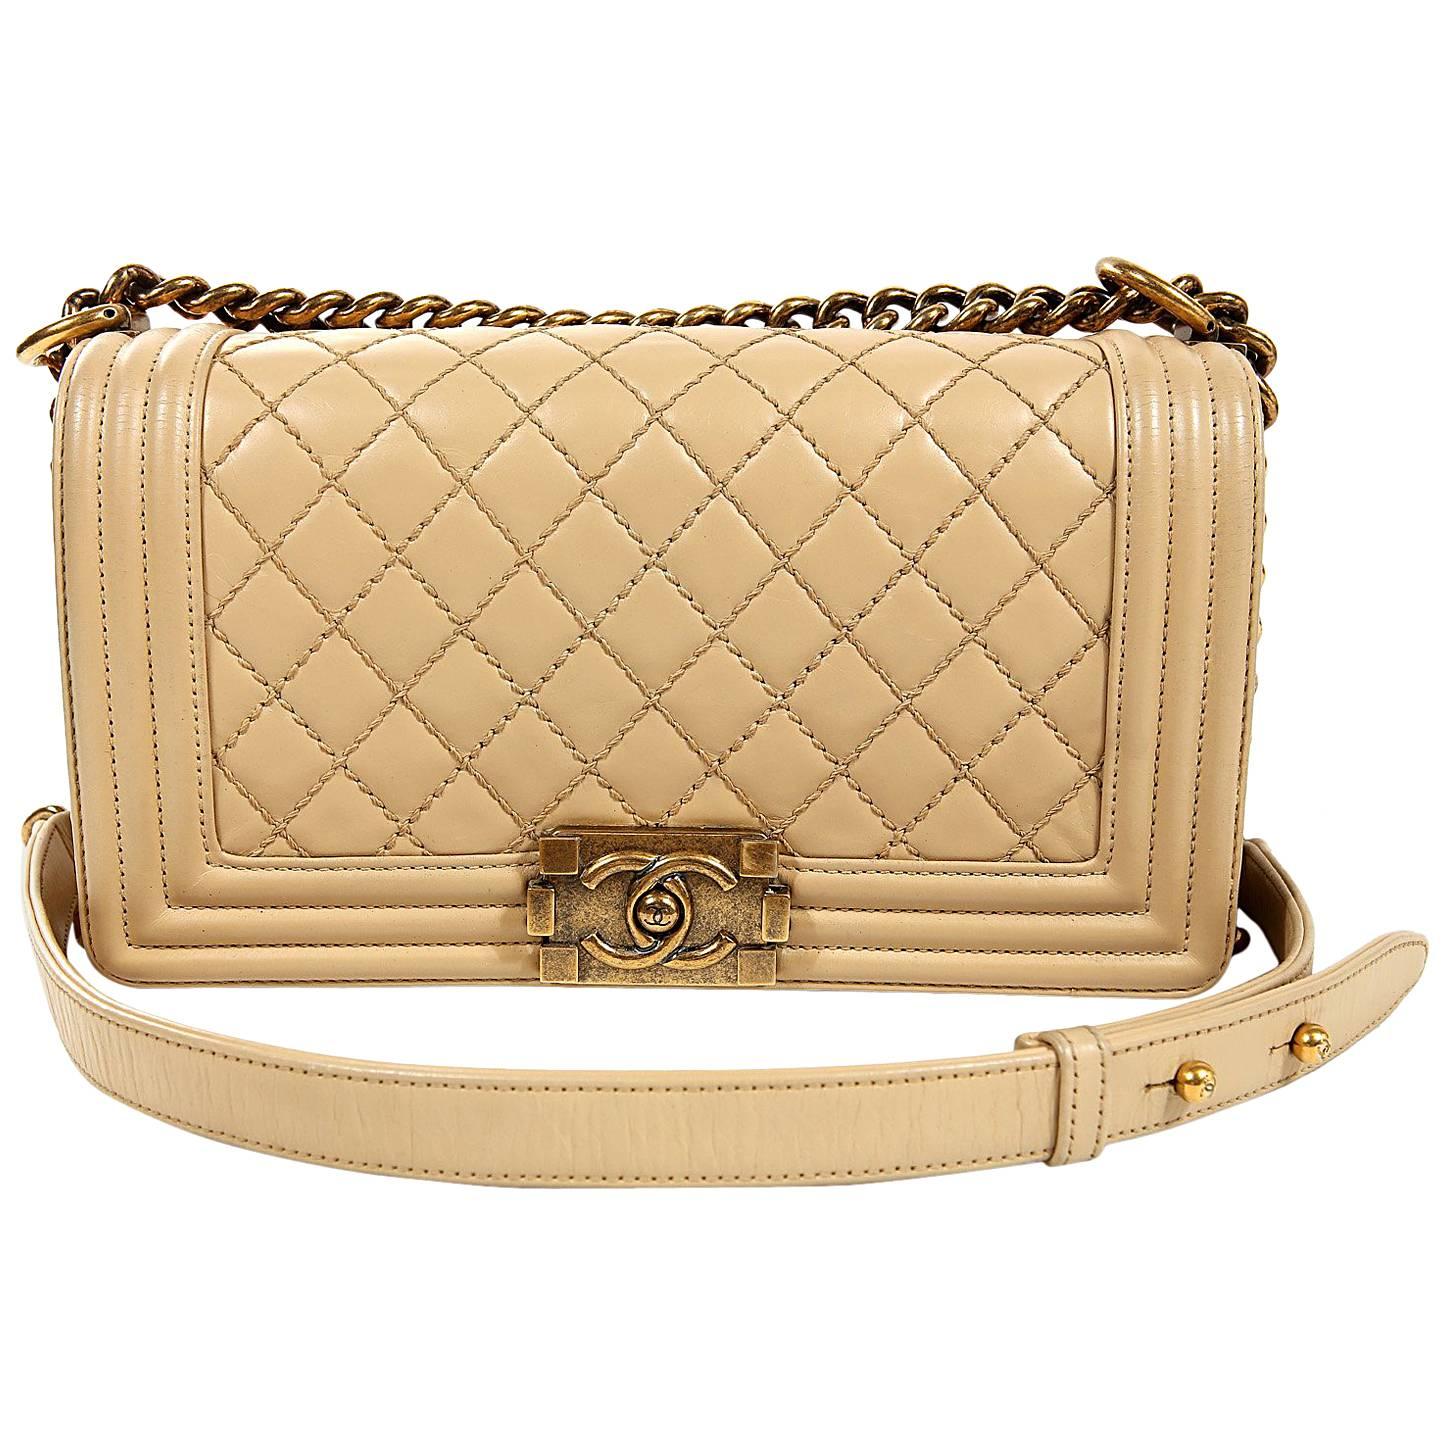 Chanel Beige Leather Medium Boy Bag- Limited Edition